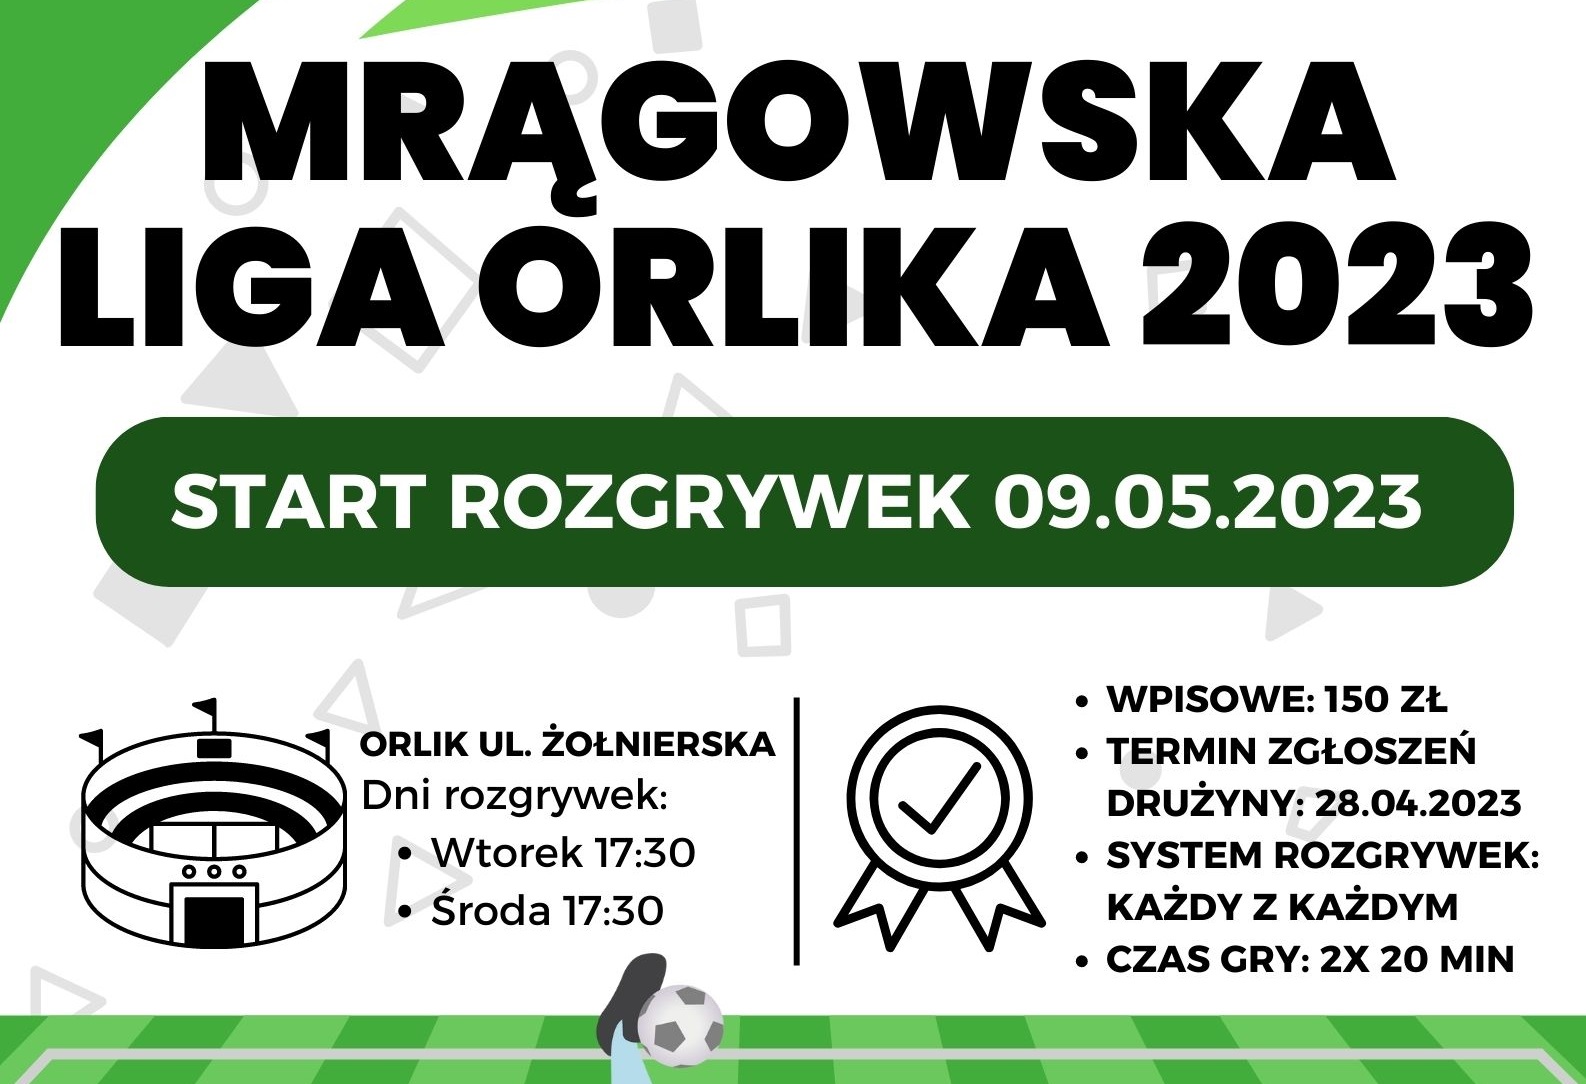 Obraz artykułu - Zapisz drużynę do Mrągowskiej Ligi Orlika 2023!